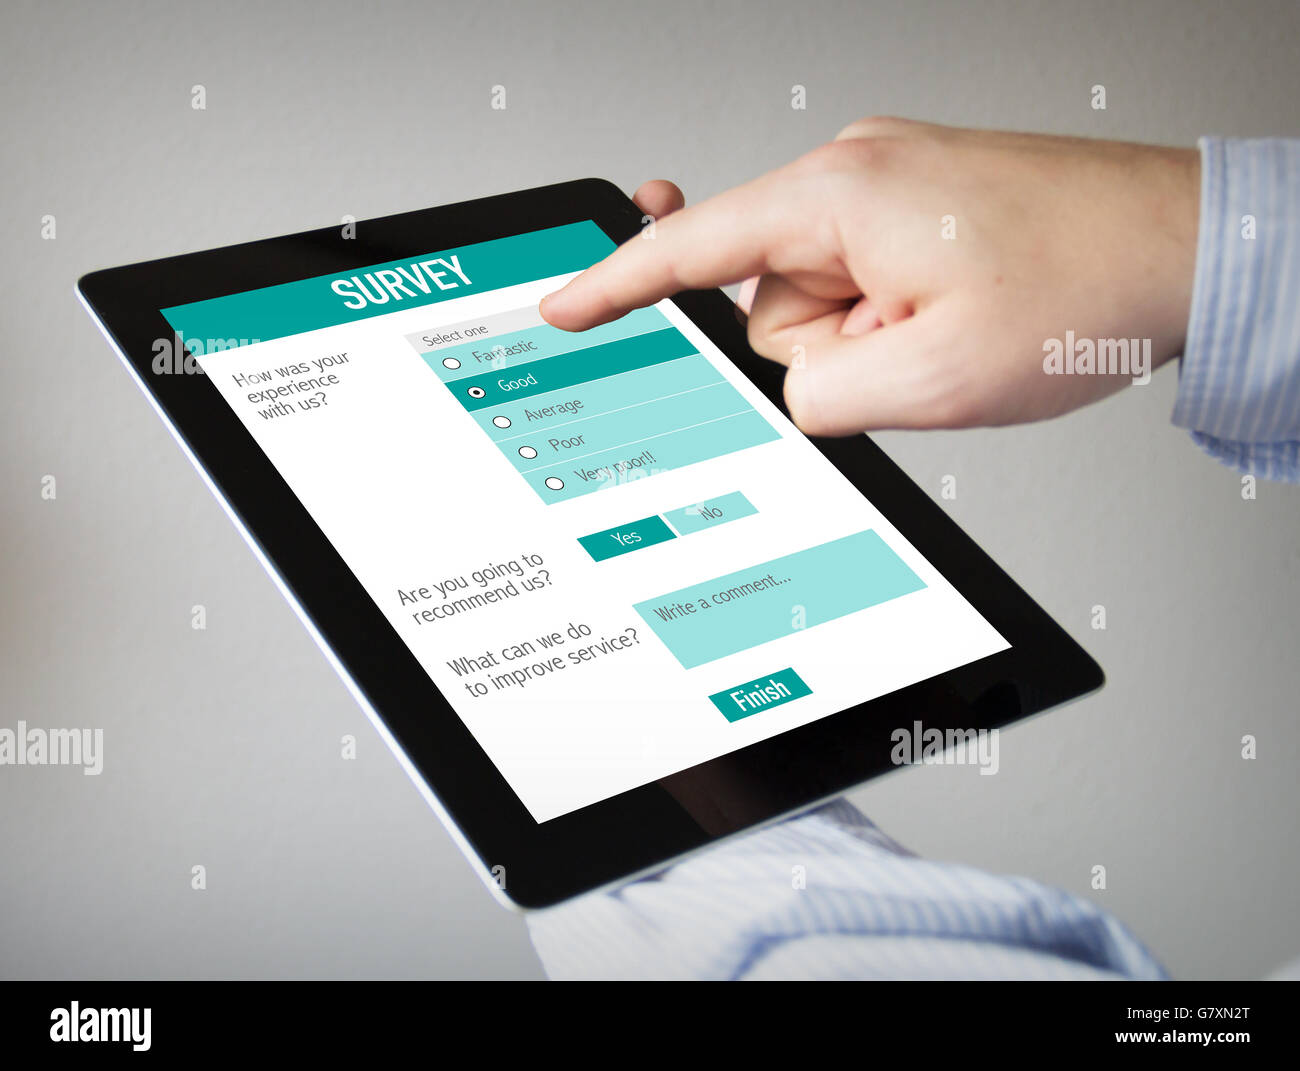 Nouvelles technologies concept : les mains à l'écran tactile Tablet avec formulaire de sondage en ligne. Tous les graphiques sur l'écran sont constitués. Banque D'Images